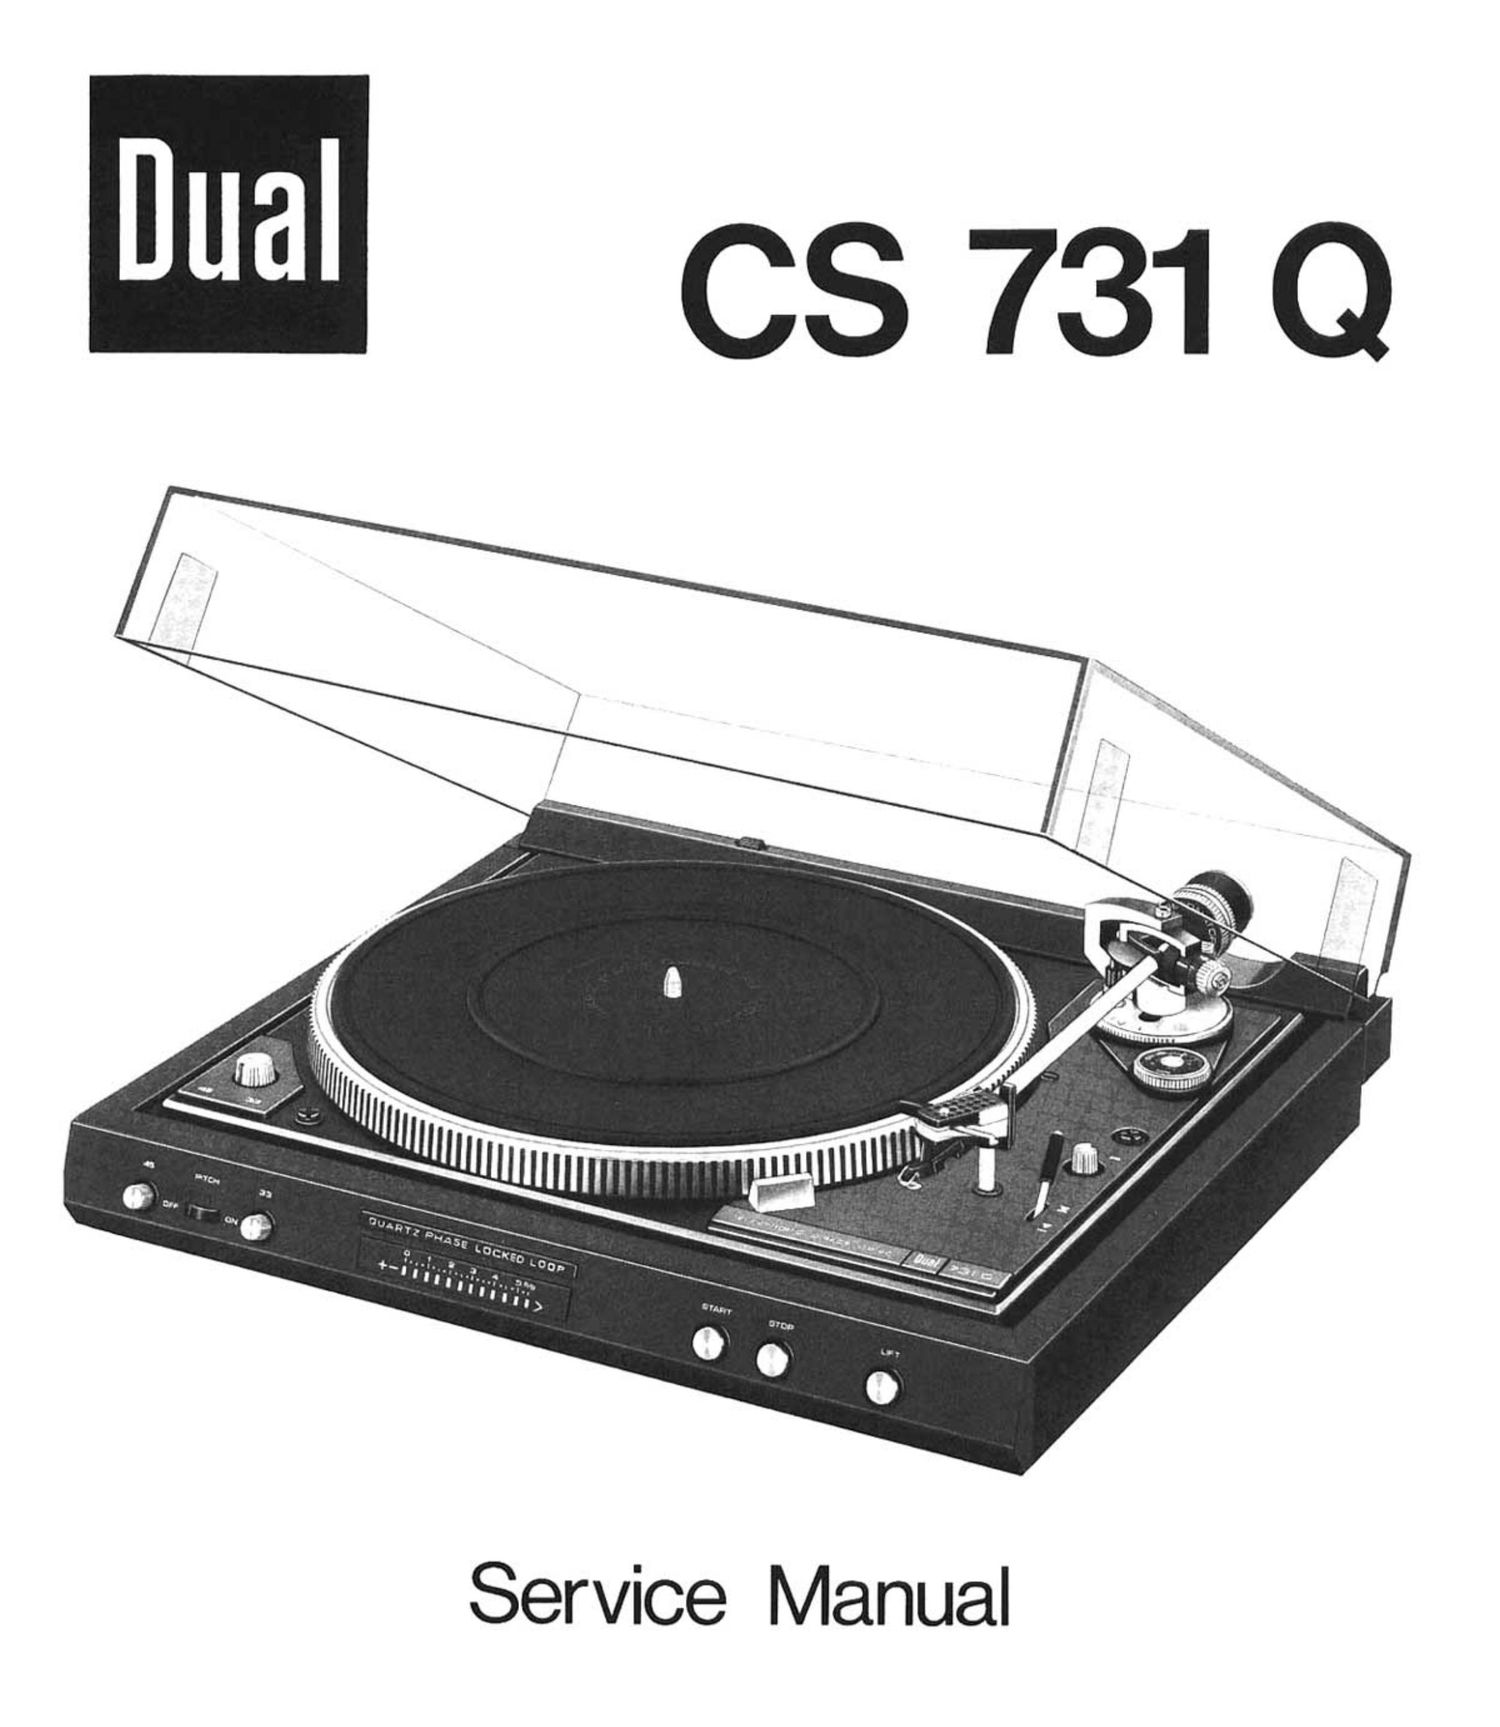 Dual CS 731 Q Service Manual